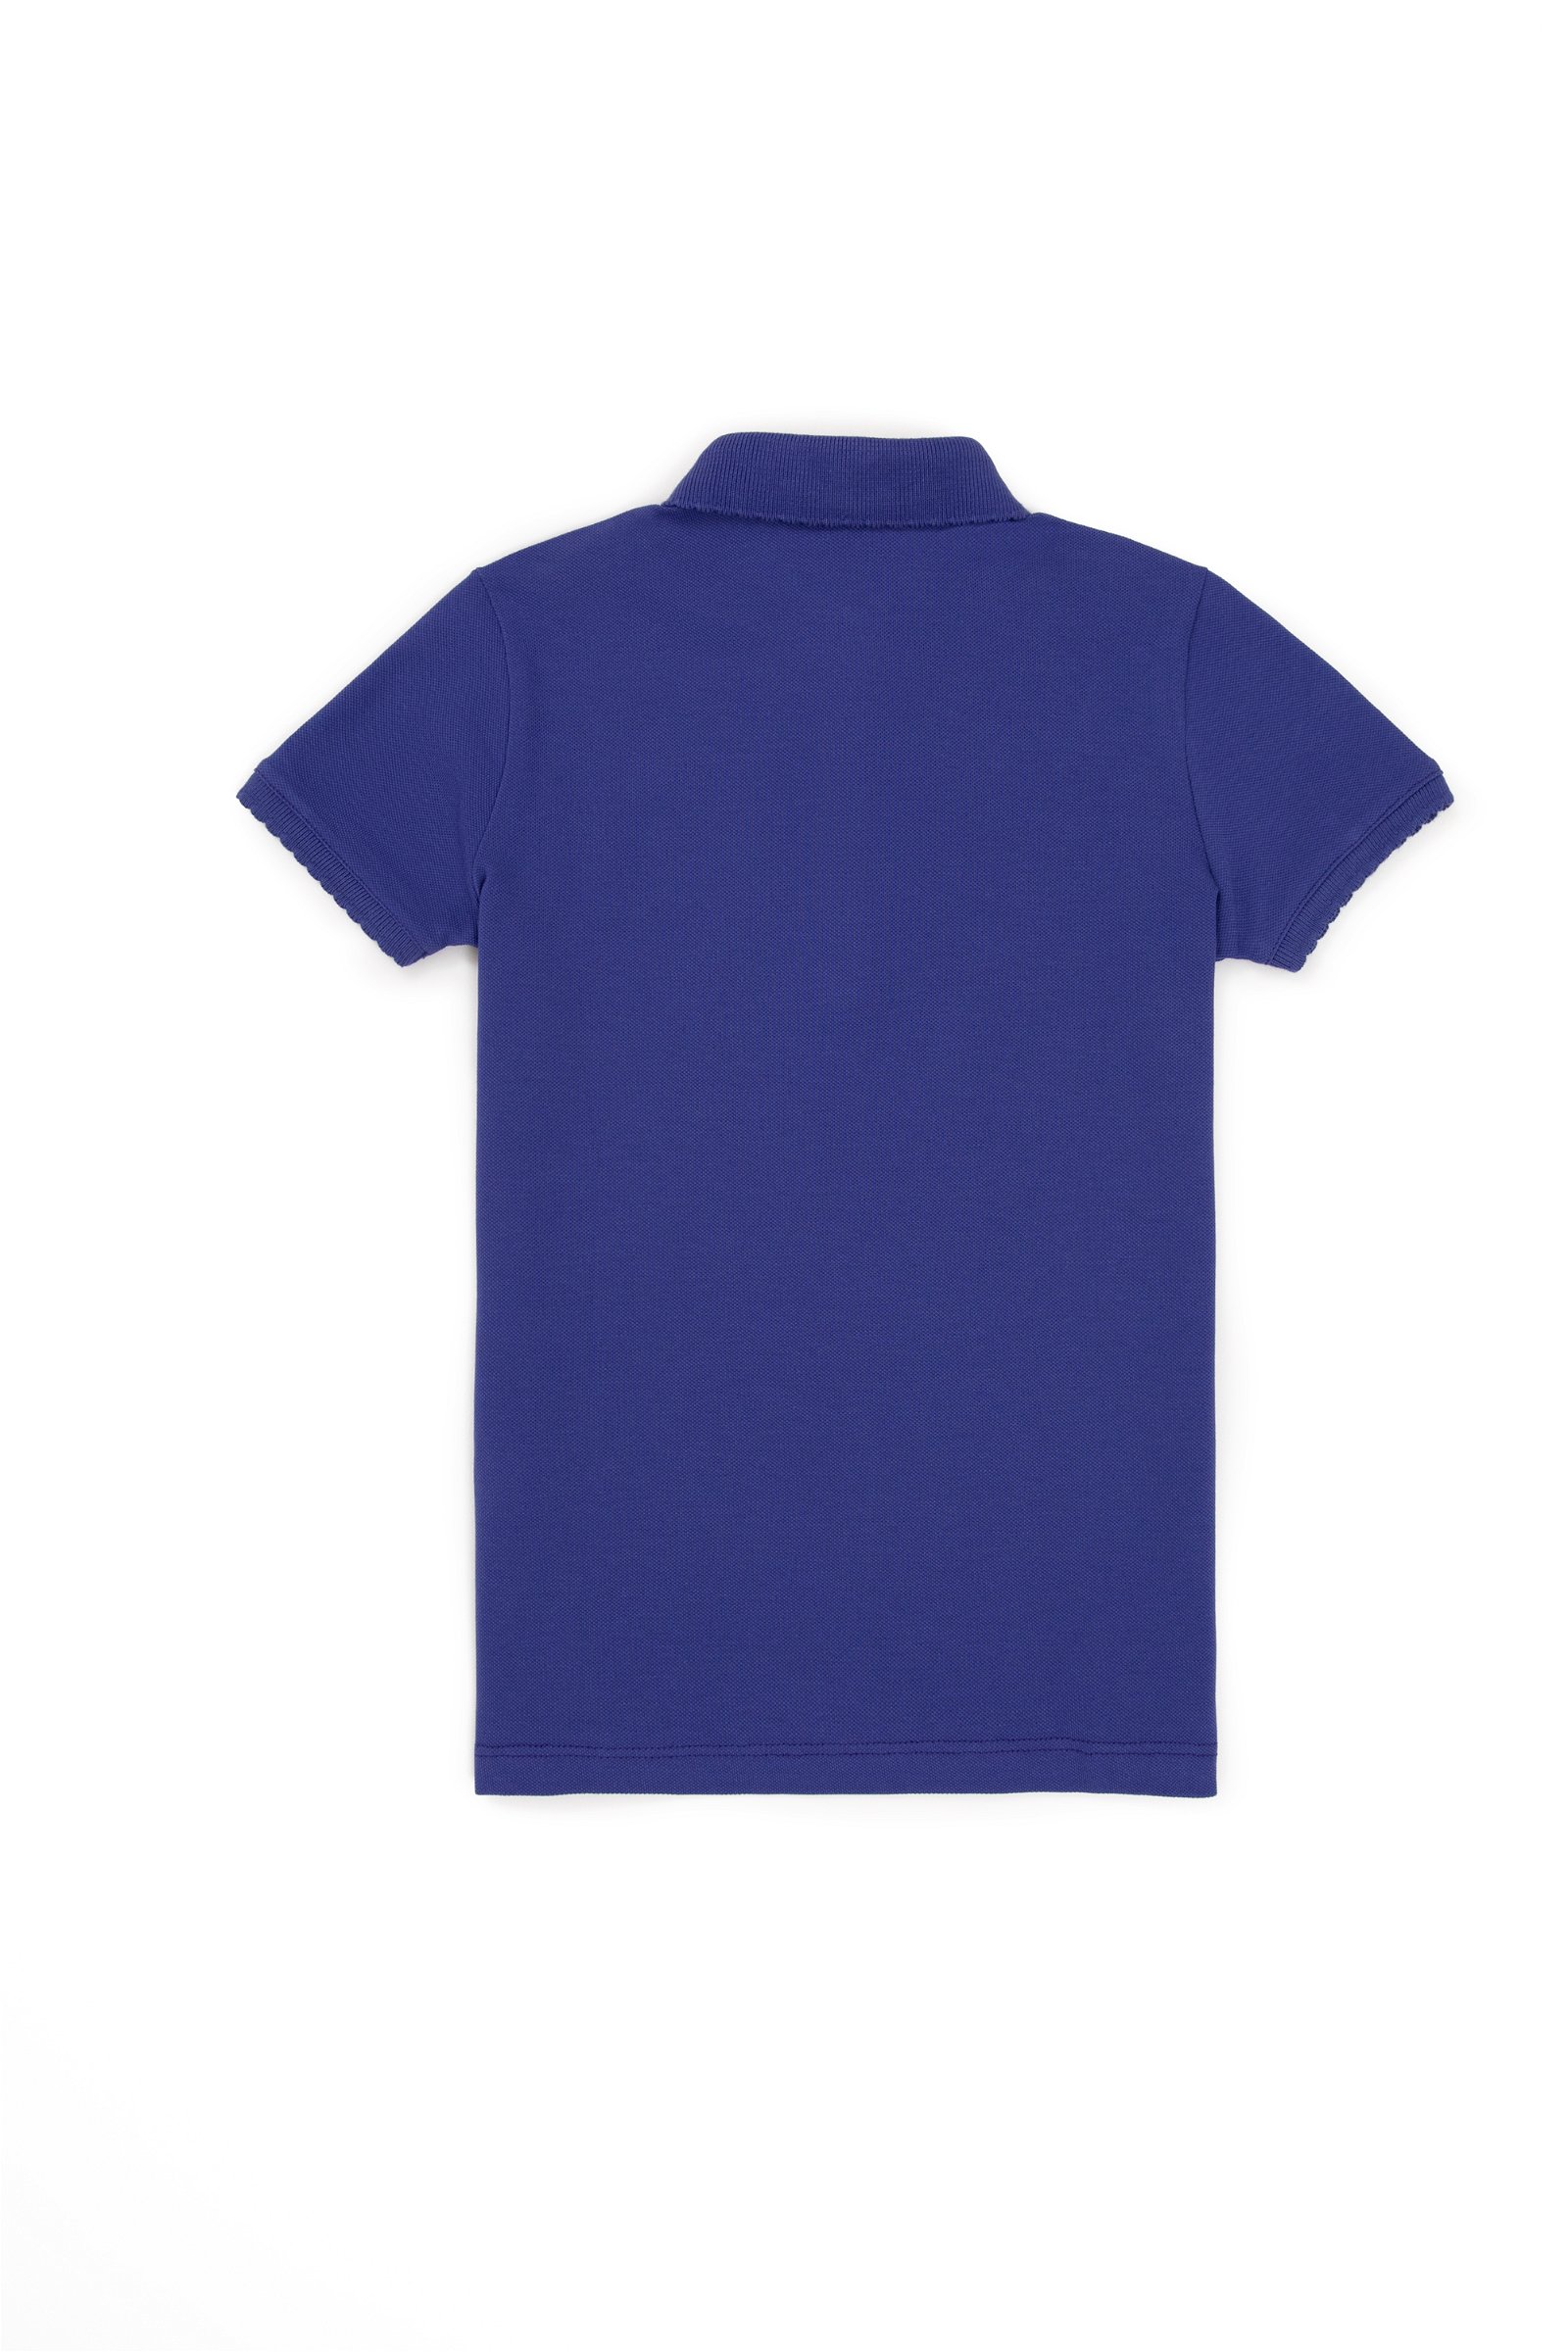 تی شرت  آبی  استاندارد فیت  دخترانه یو اس پولو | US POLO ASSN